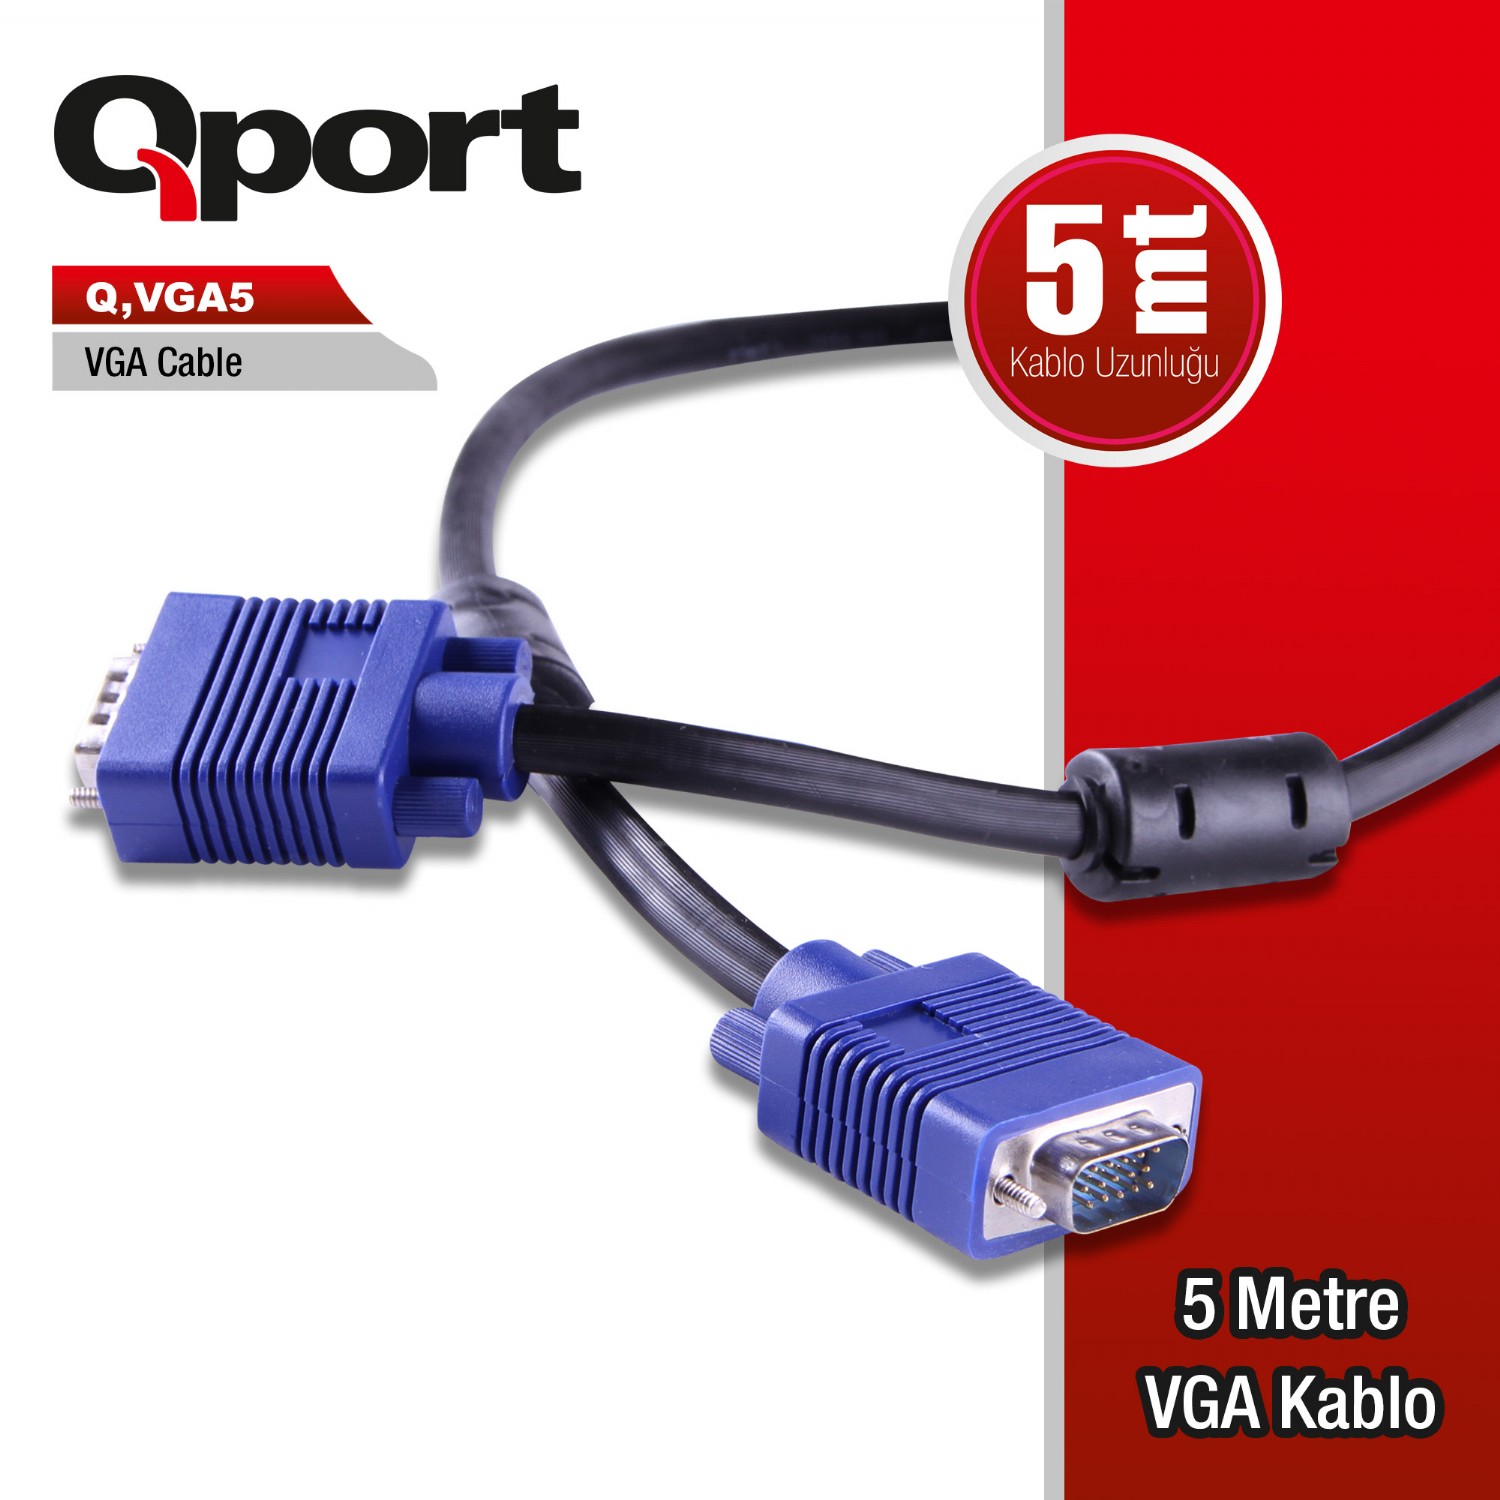 Q-VGA5